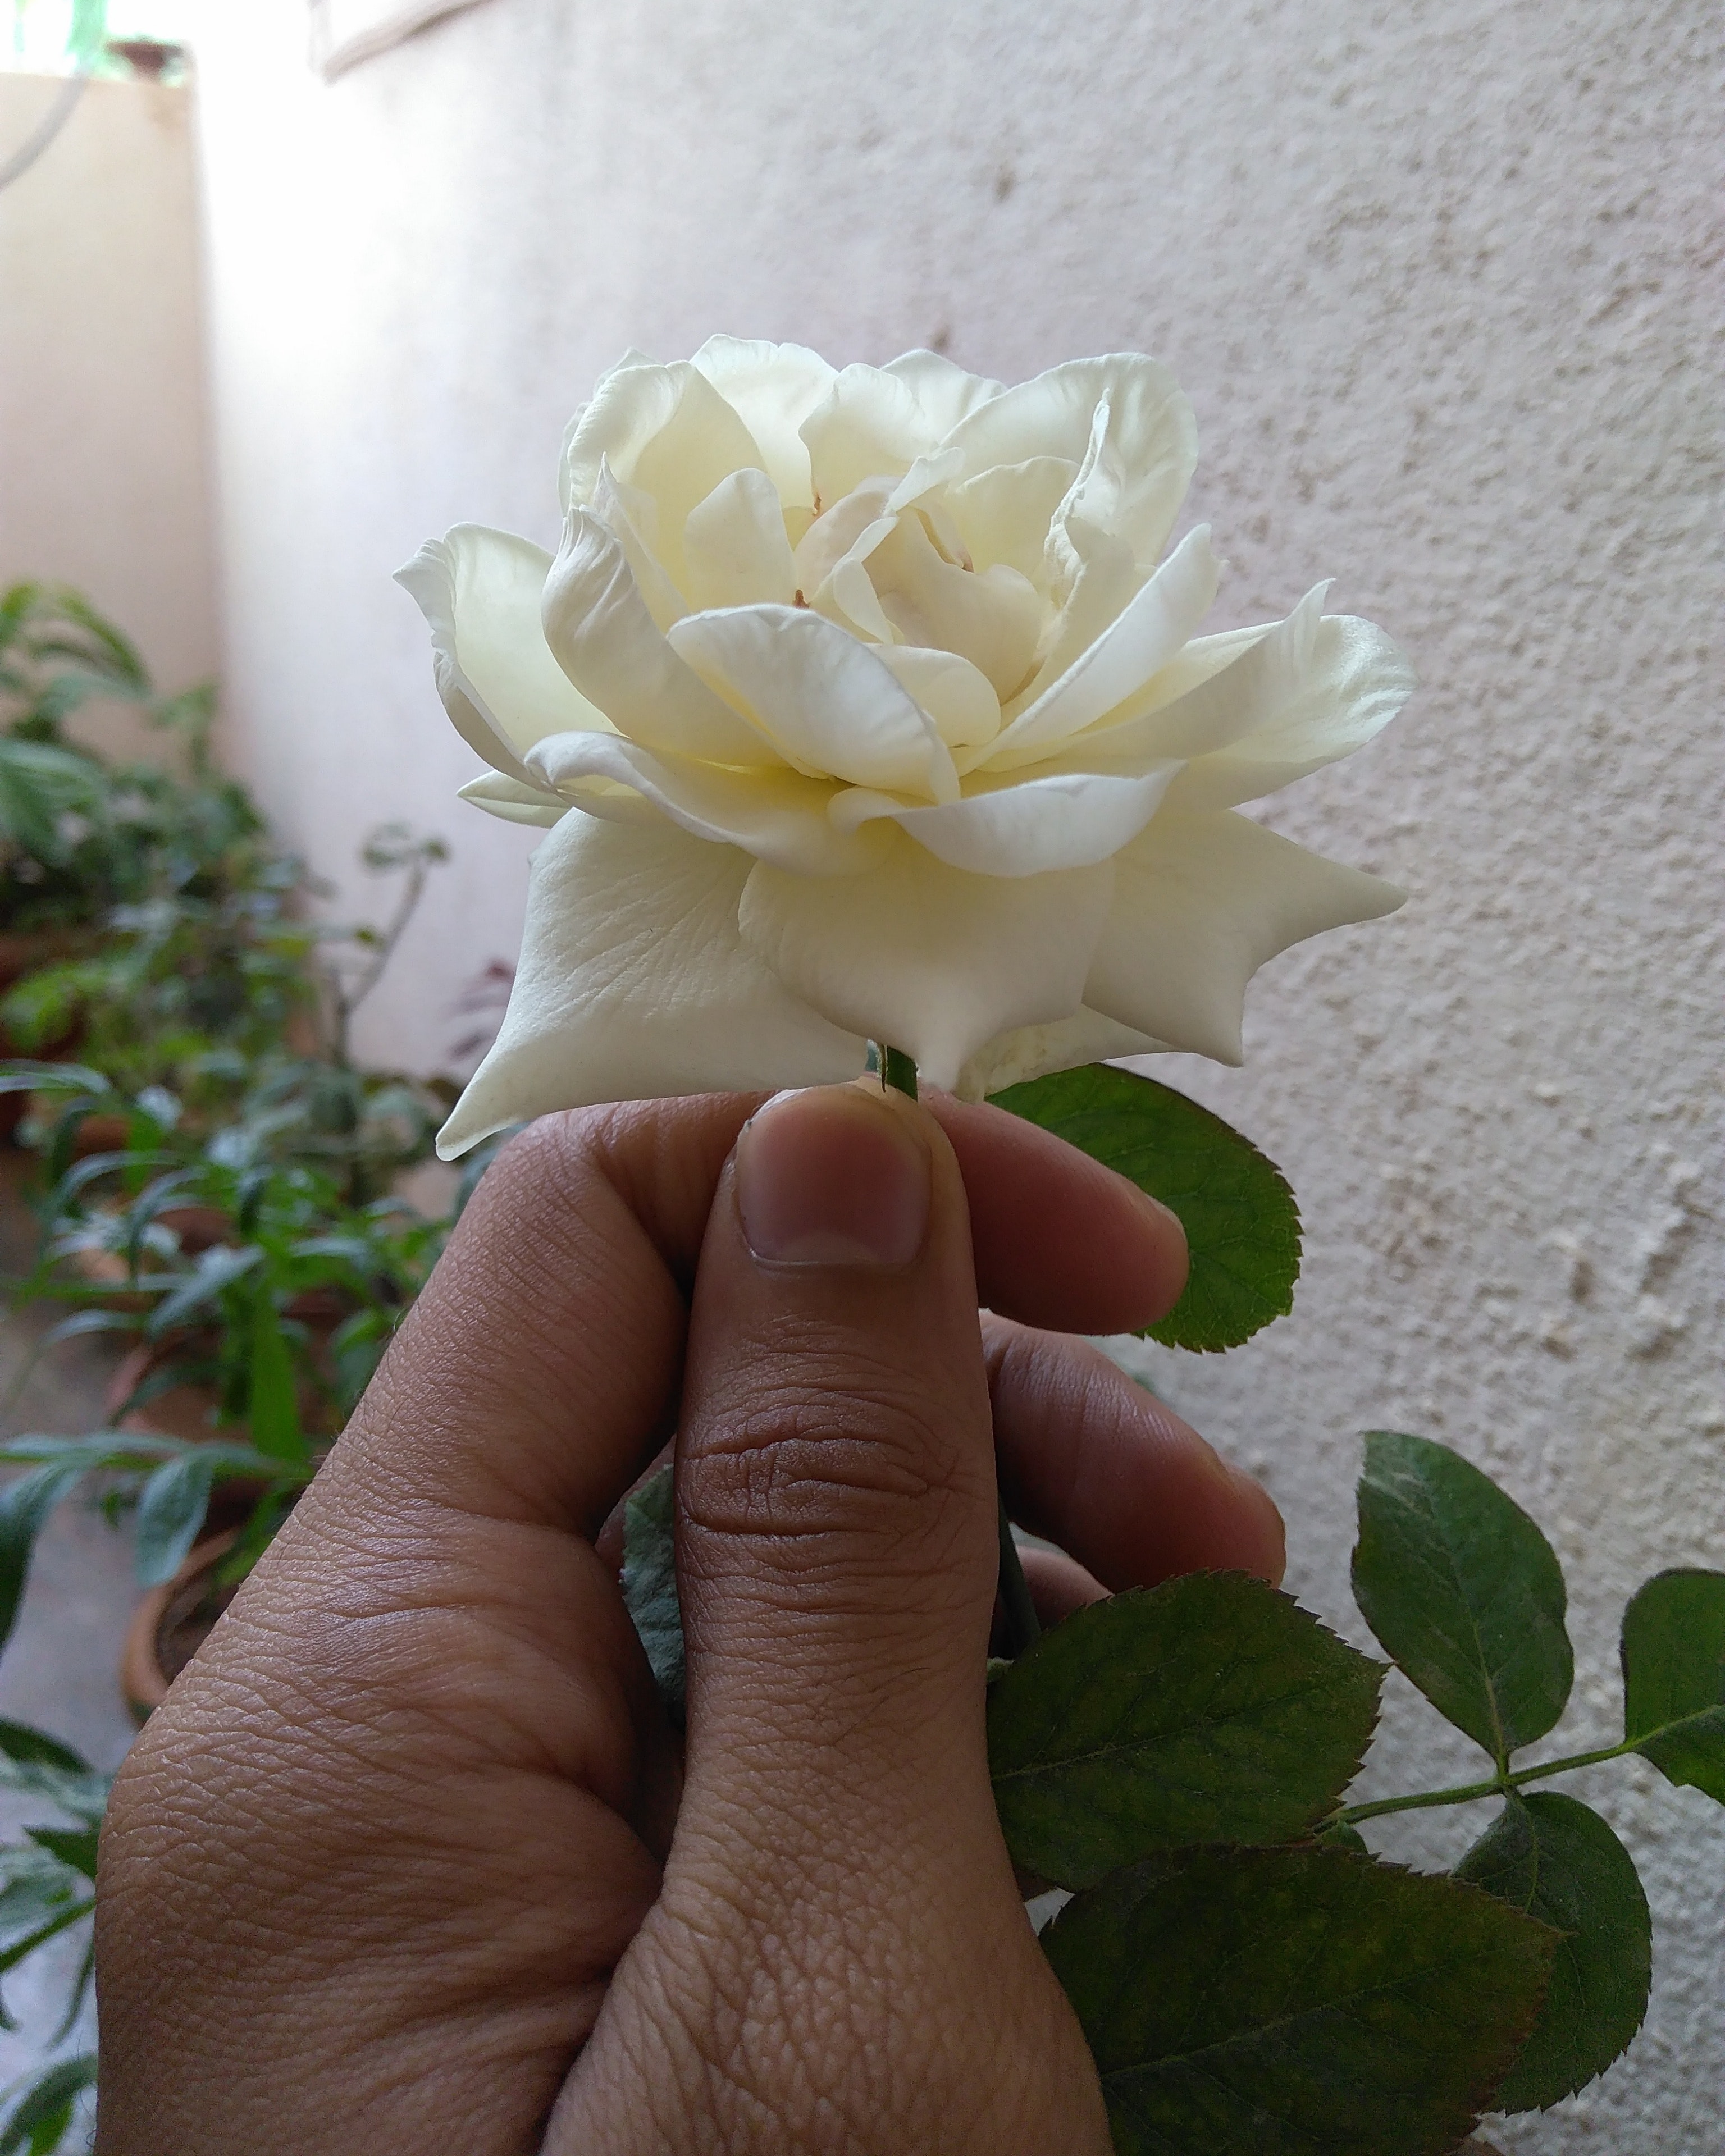 Mawar Putih Hd - HD Wallpaper 